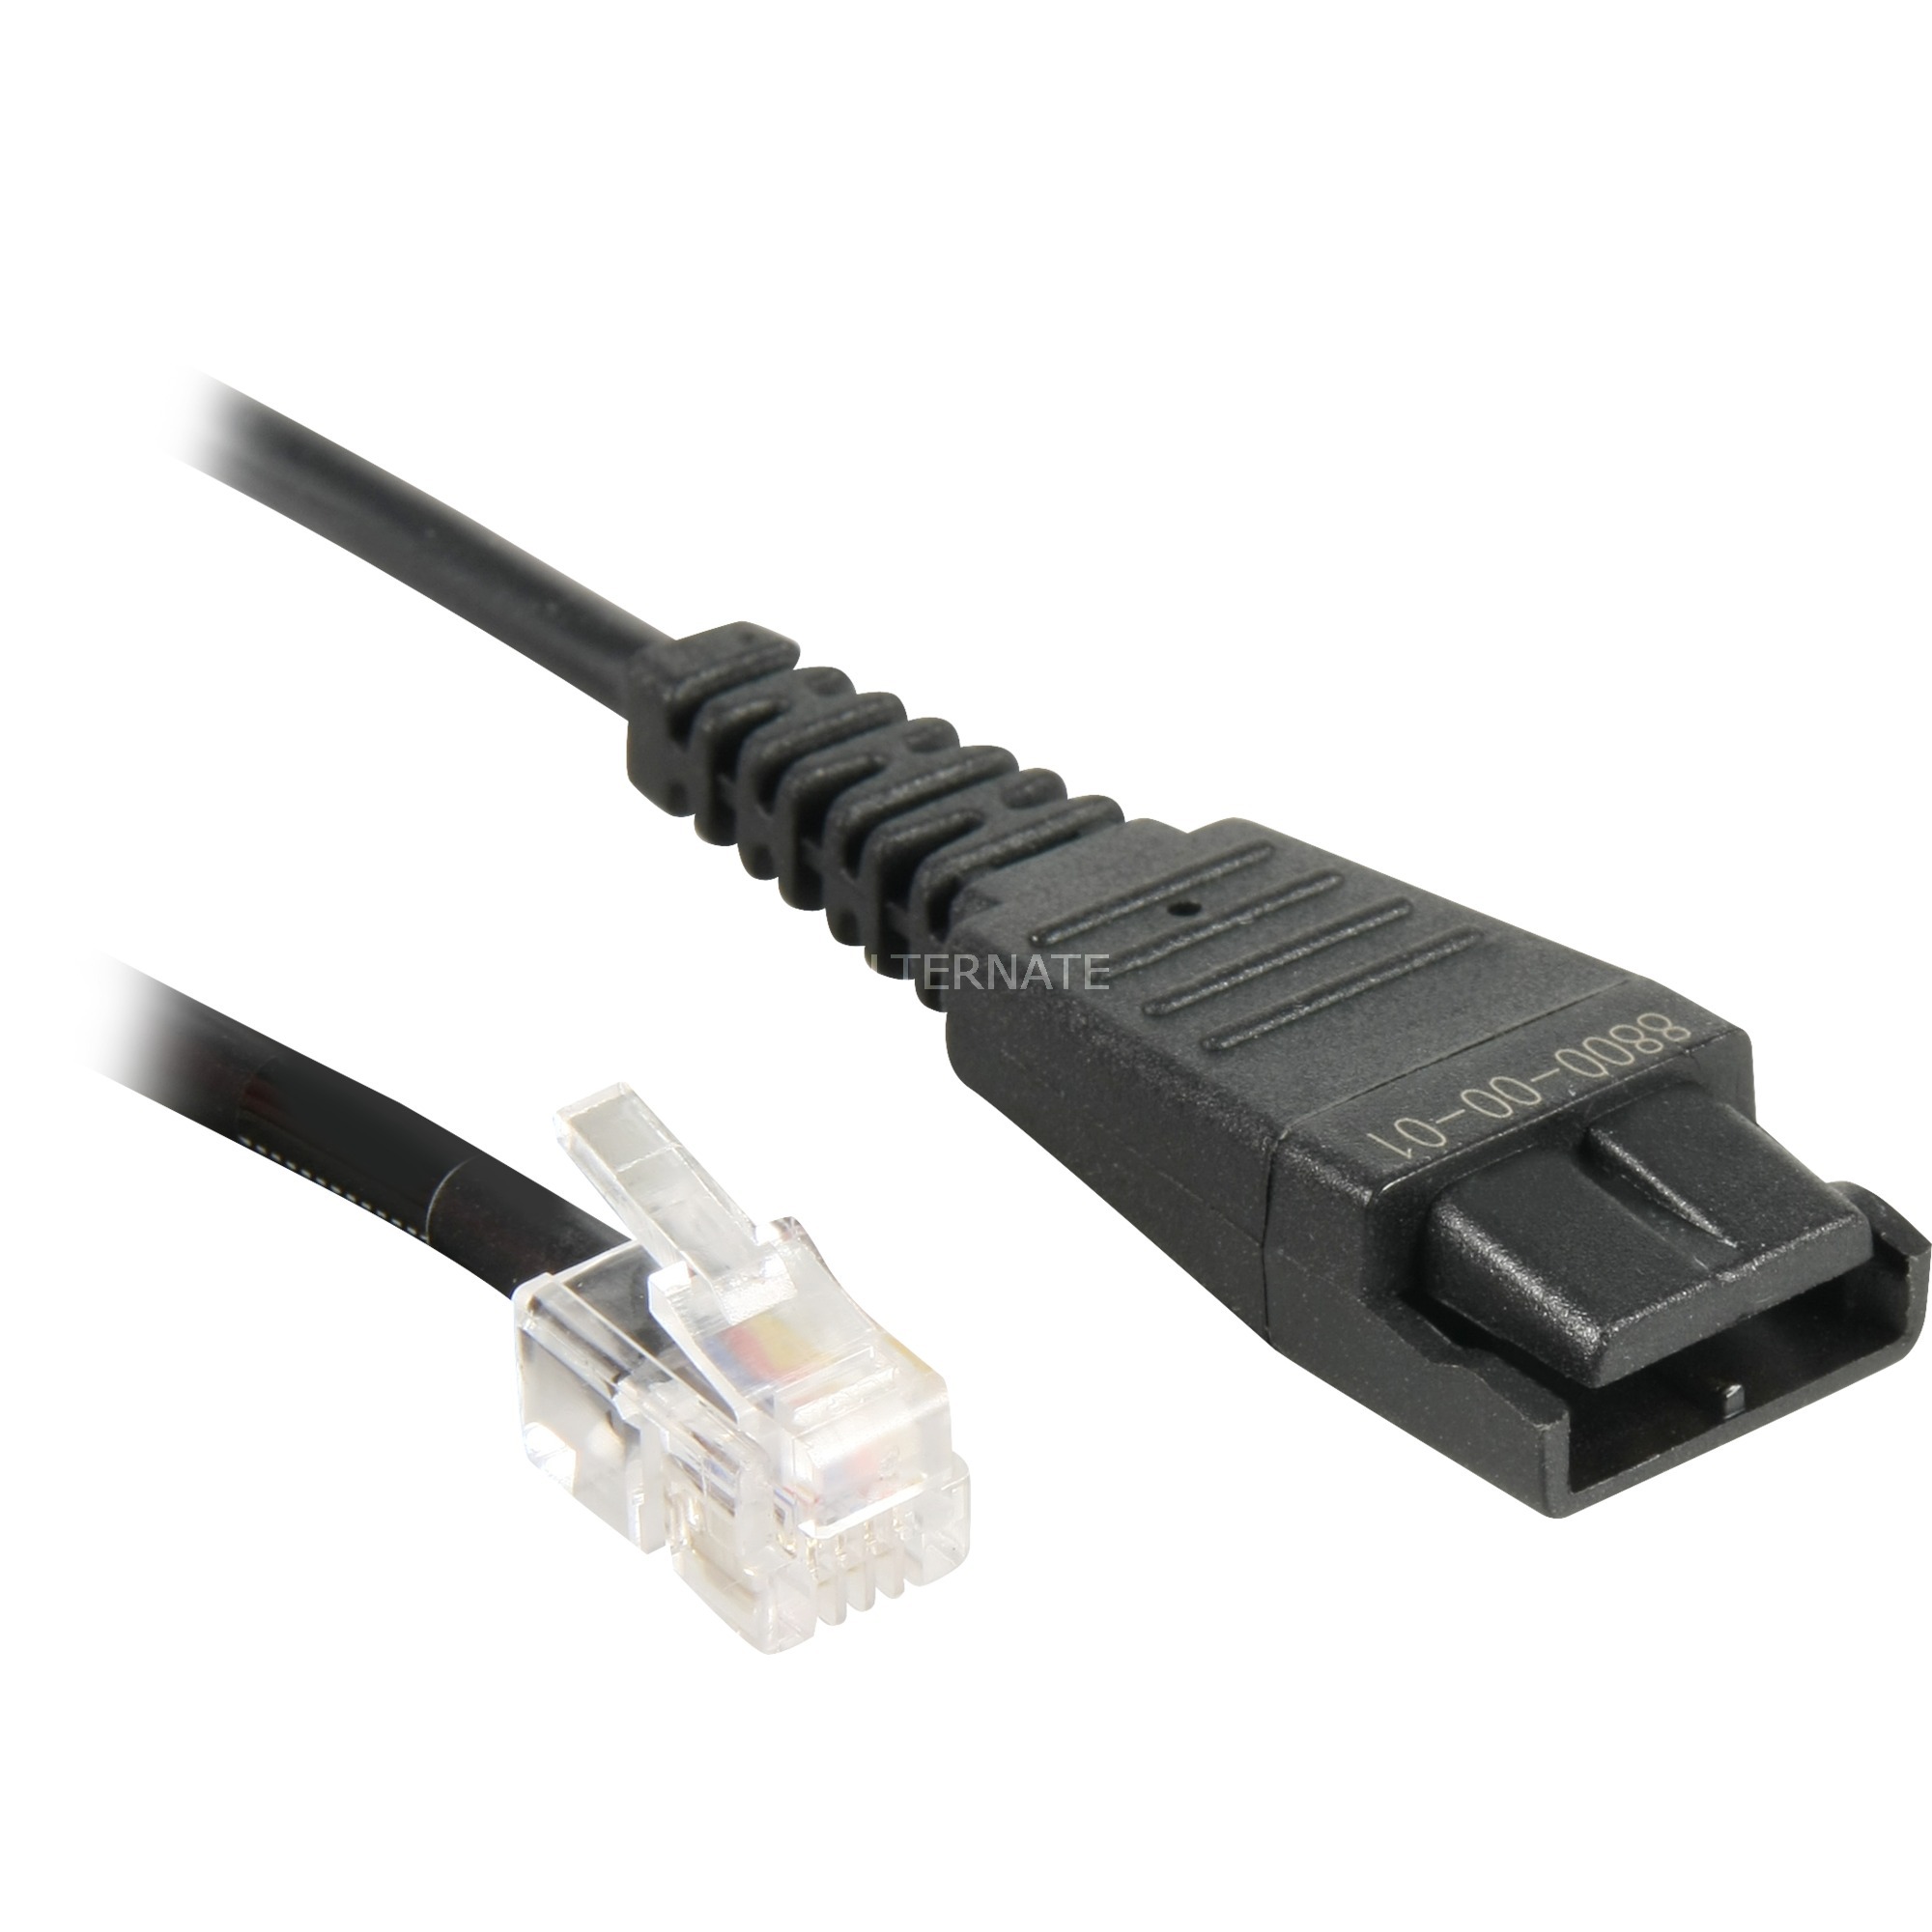 Image of Alternate - Kabel glatt QD auf RJ10, Adapter online einkaufen bei Alternate